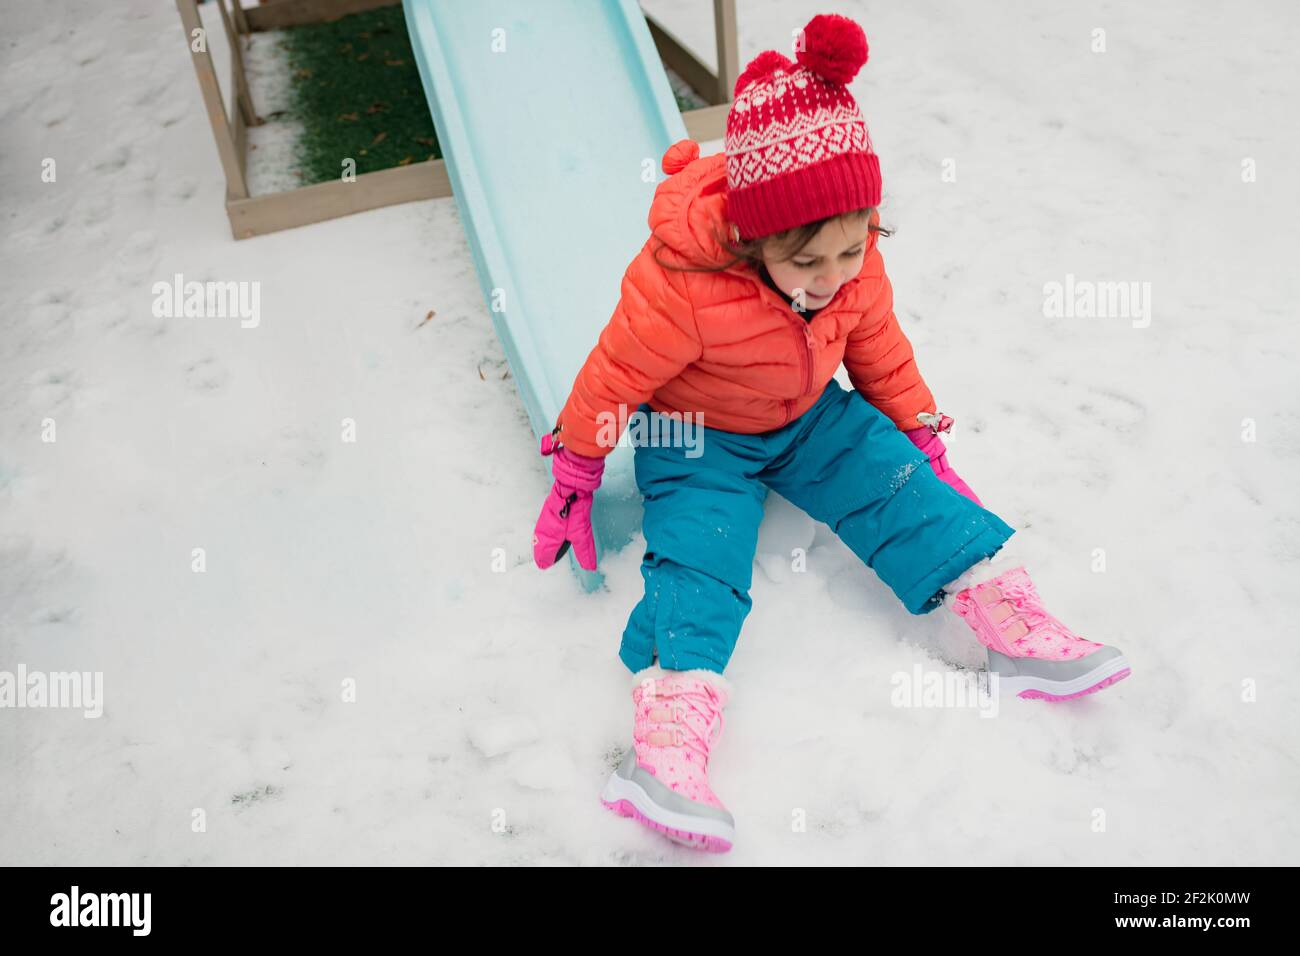 Une jeune fille d'âge préscolaire jouant sur la diapositive le jour de neige Banque D'Images